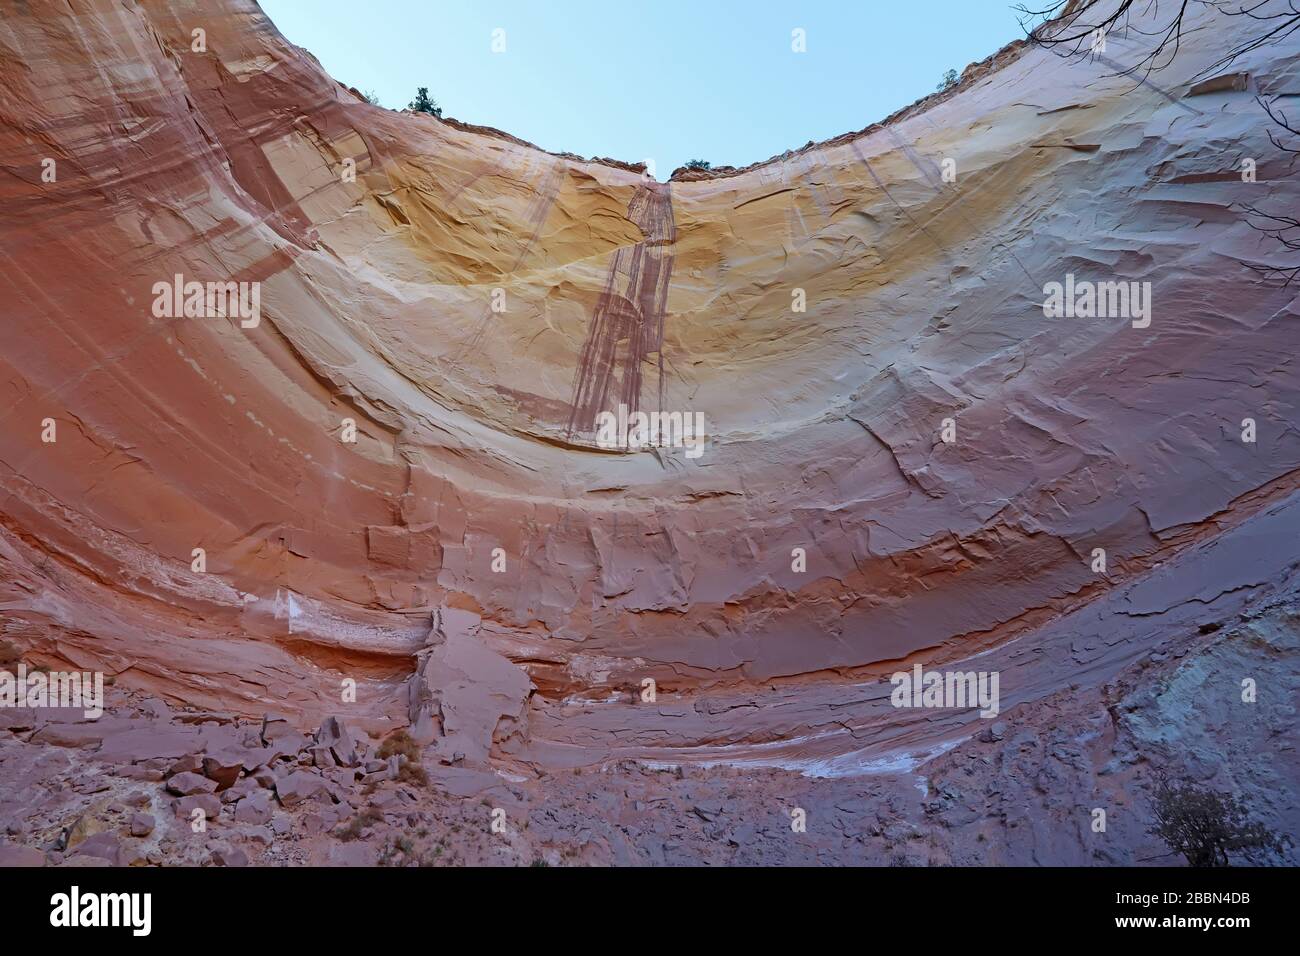 Die Lippe der erodierten Felsformationen aus Sandstein, die das Echo Amphitheater im Carson National Forest nahe dem Dorf Abiquiu, New Mexico, bilden Stockfoto